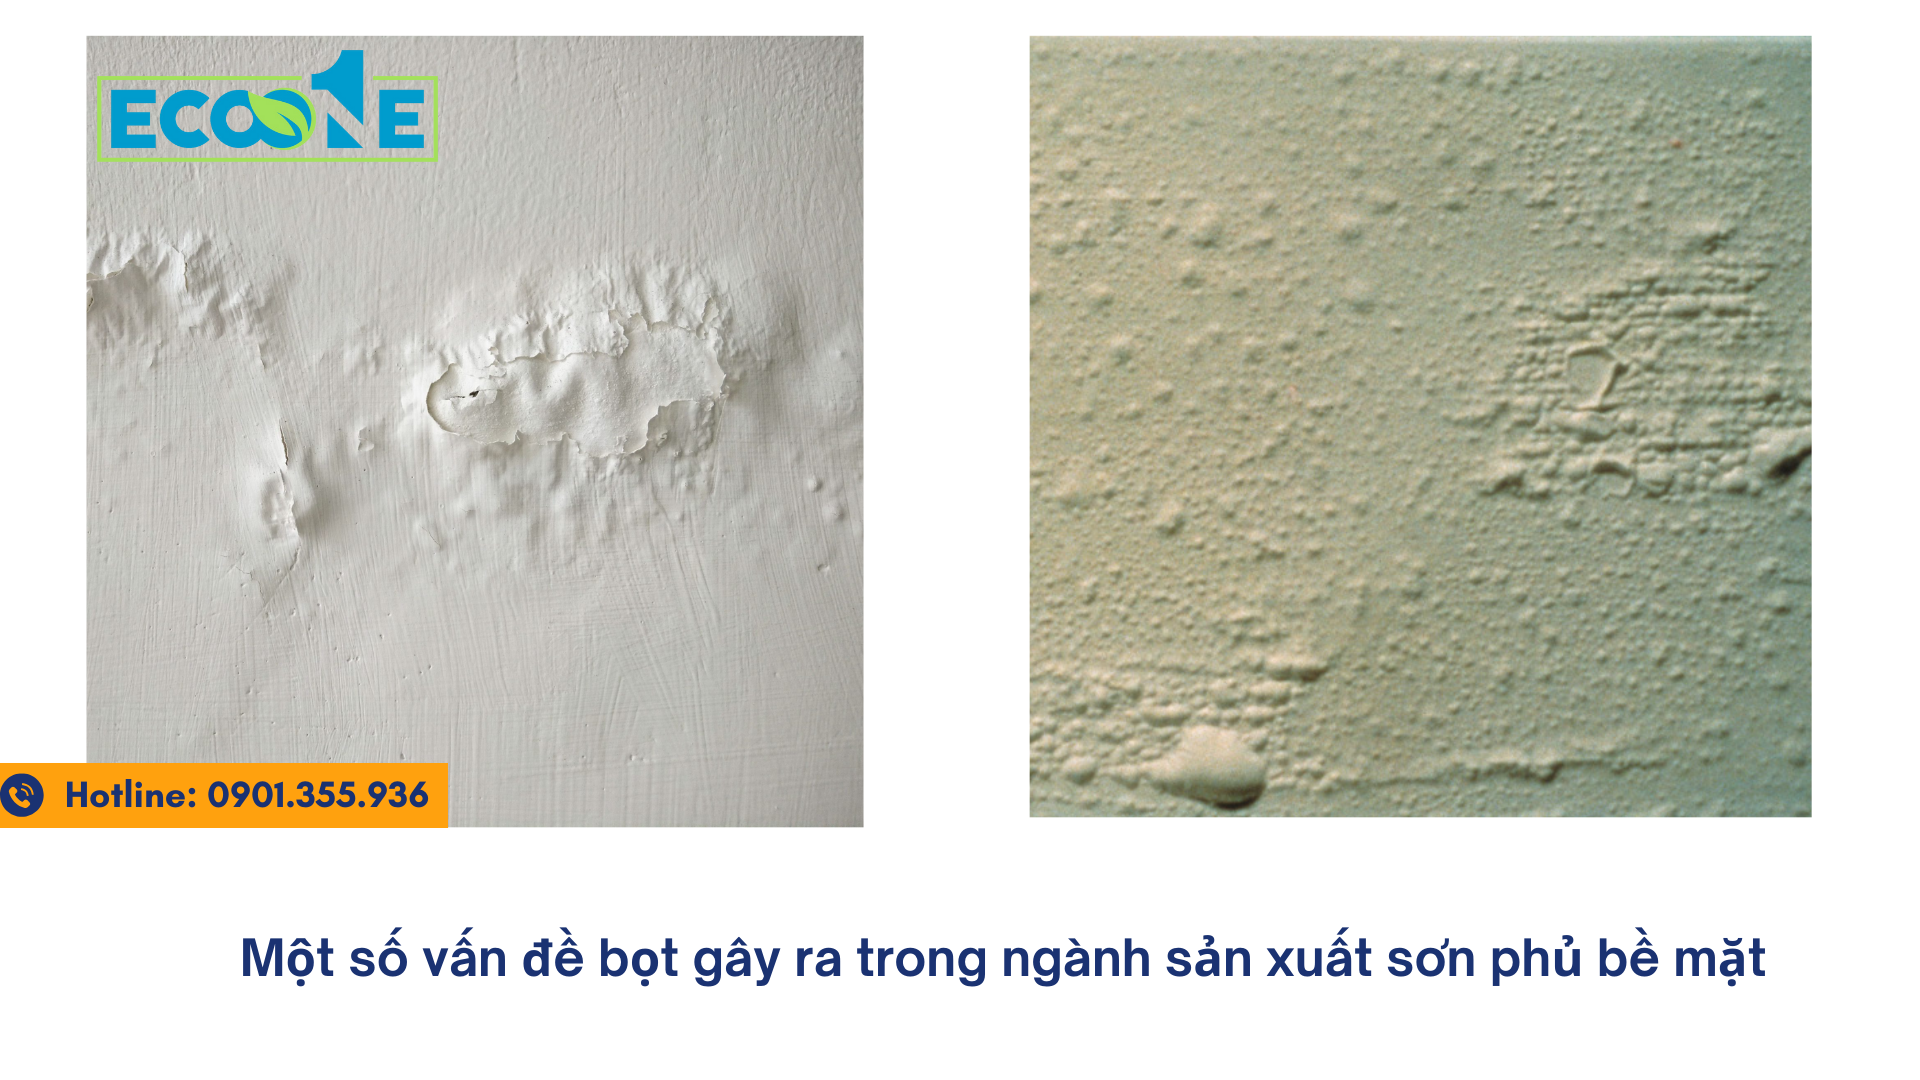 Một số vấn đề bọt gây ra trong ngành sản xuất sơn phủ bề mặt